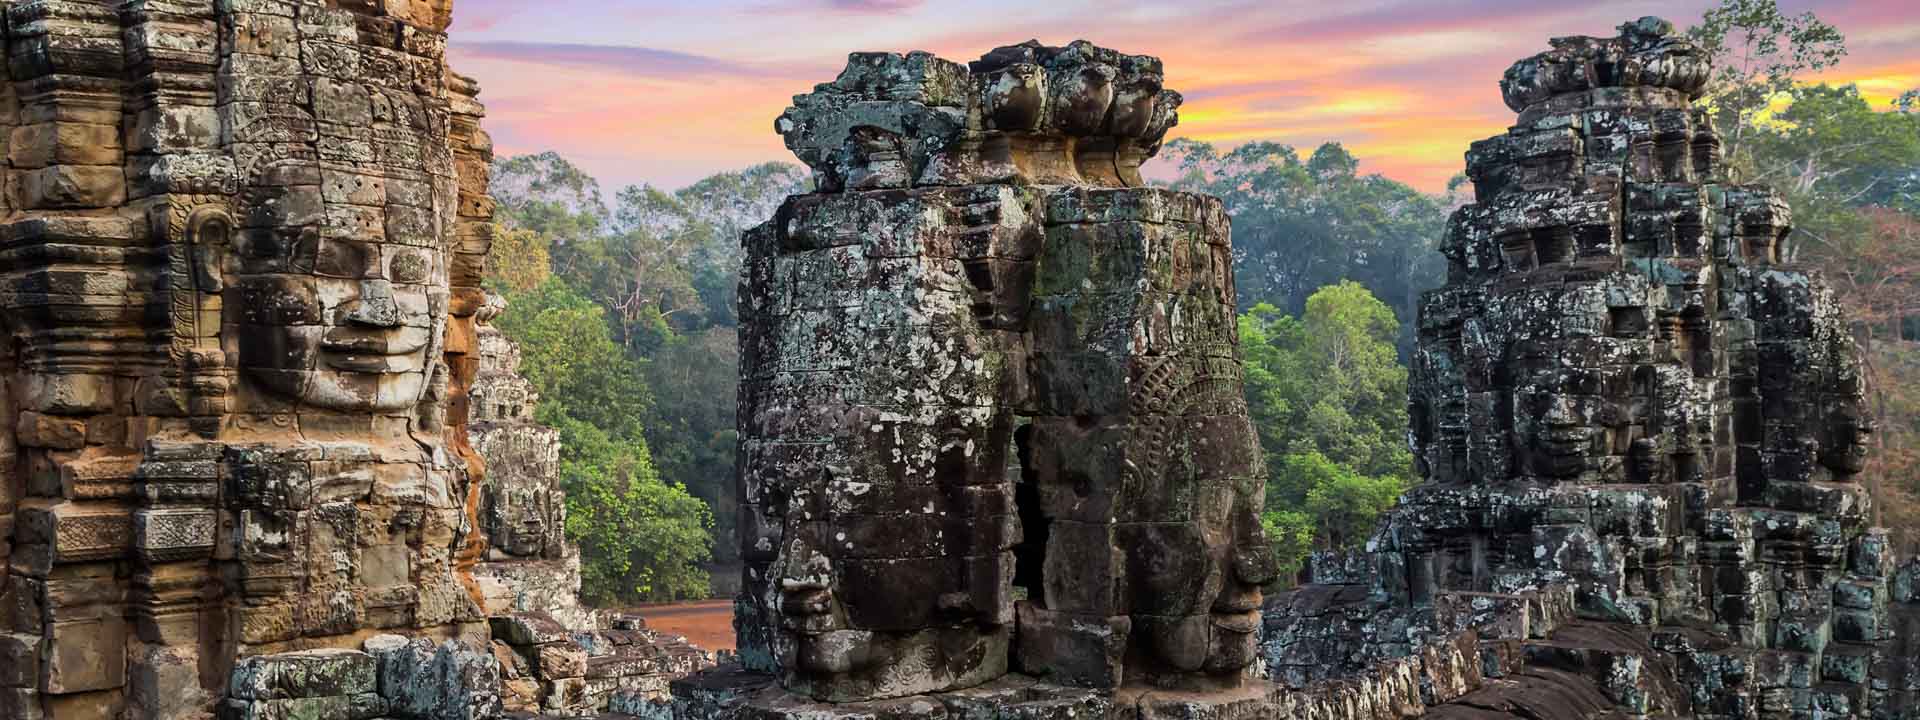 Treasures of Vietnam Cambodia Laos Tour 12 days